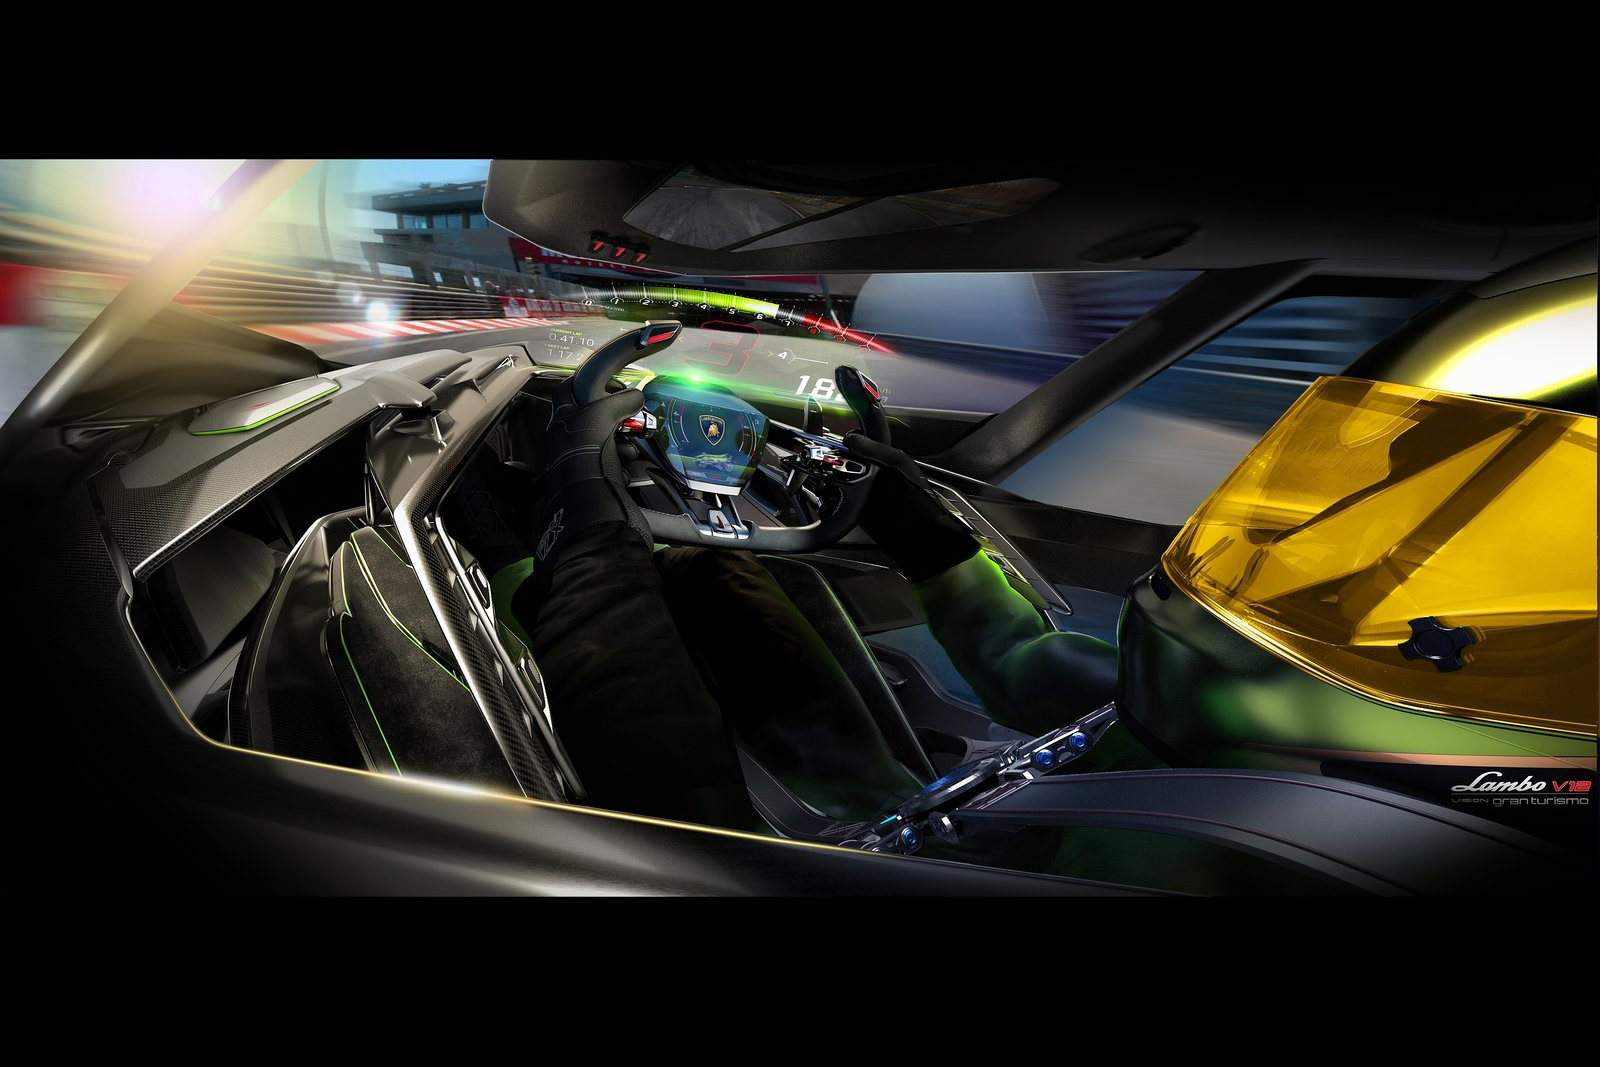 Galerie: Lamborghini Lambo V12 Vision Gran Turismo Concept